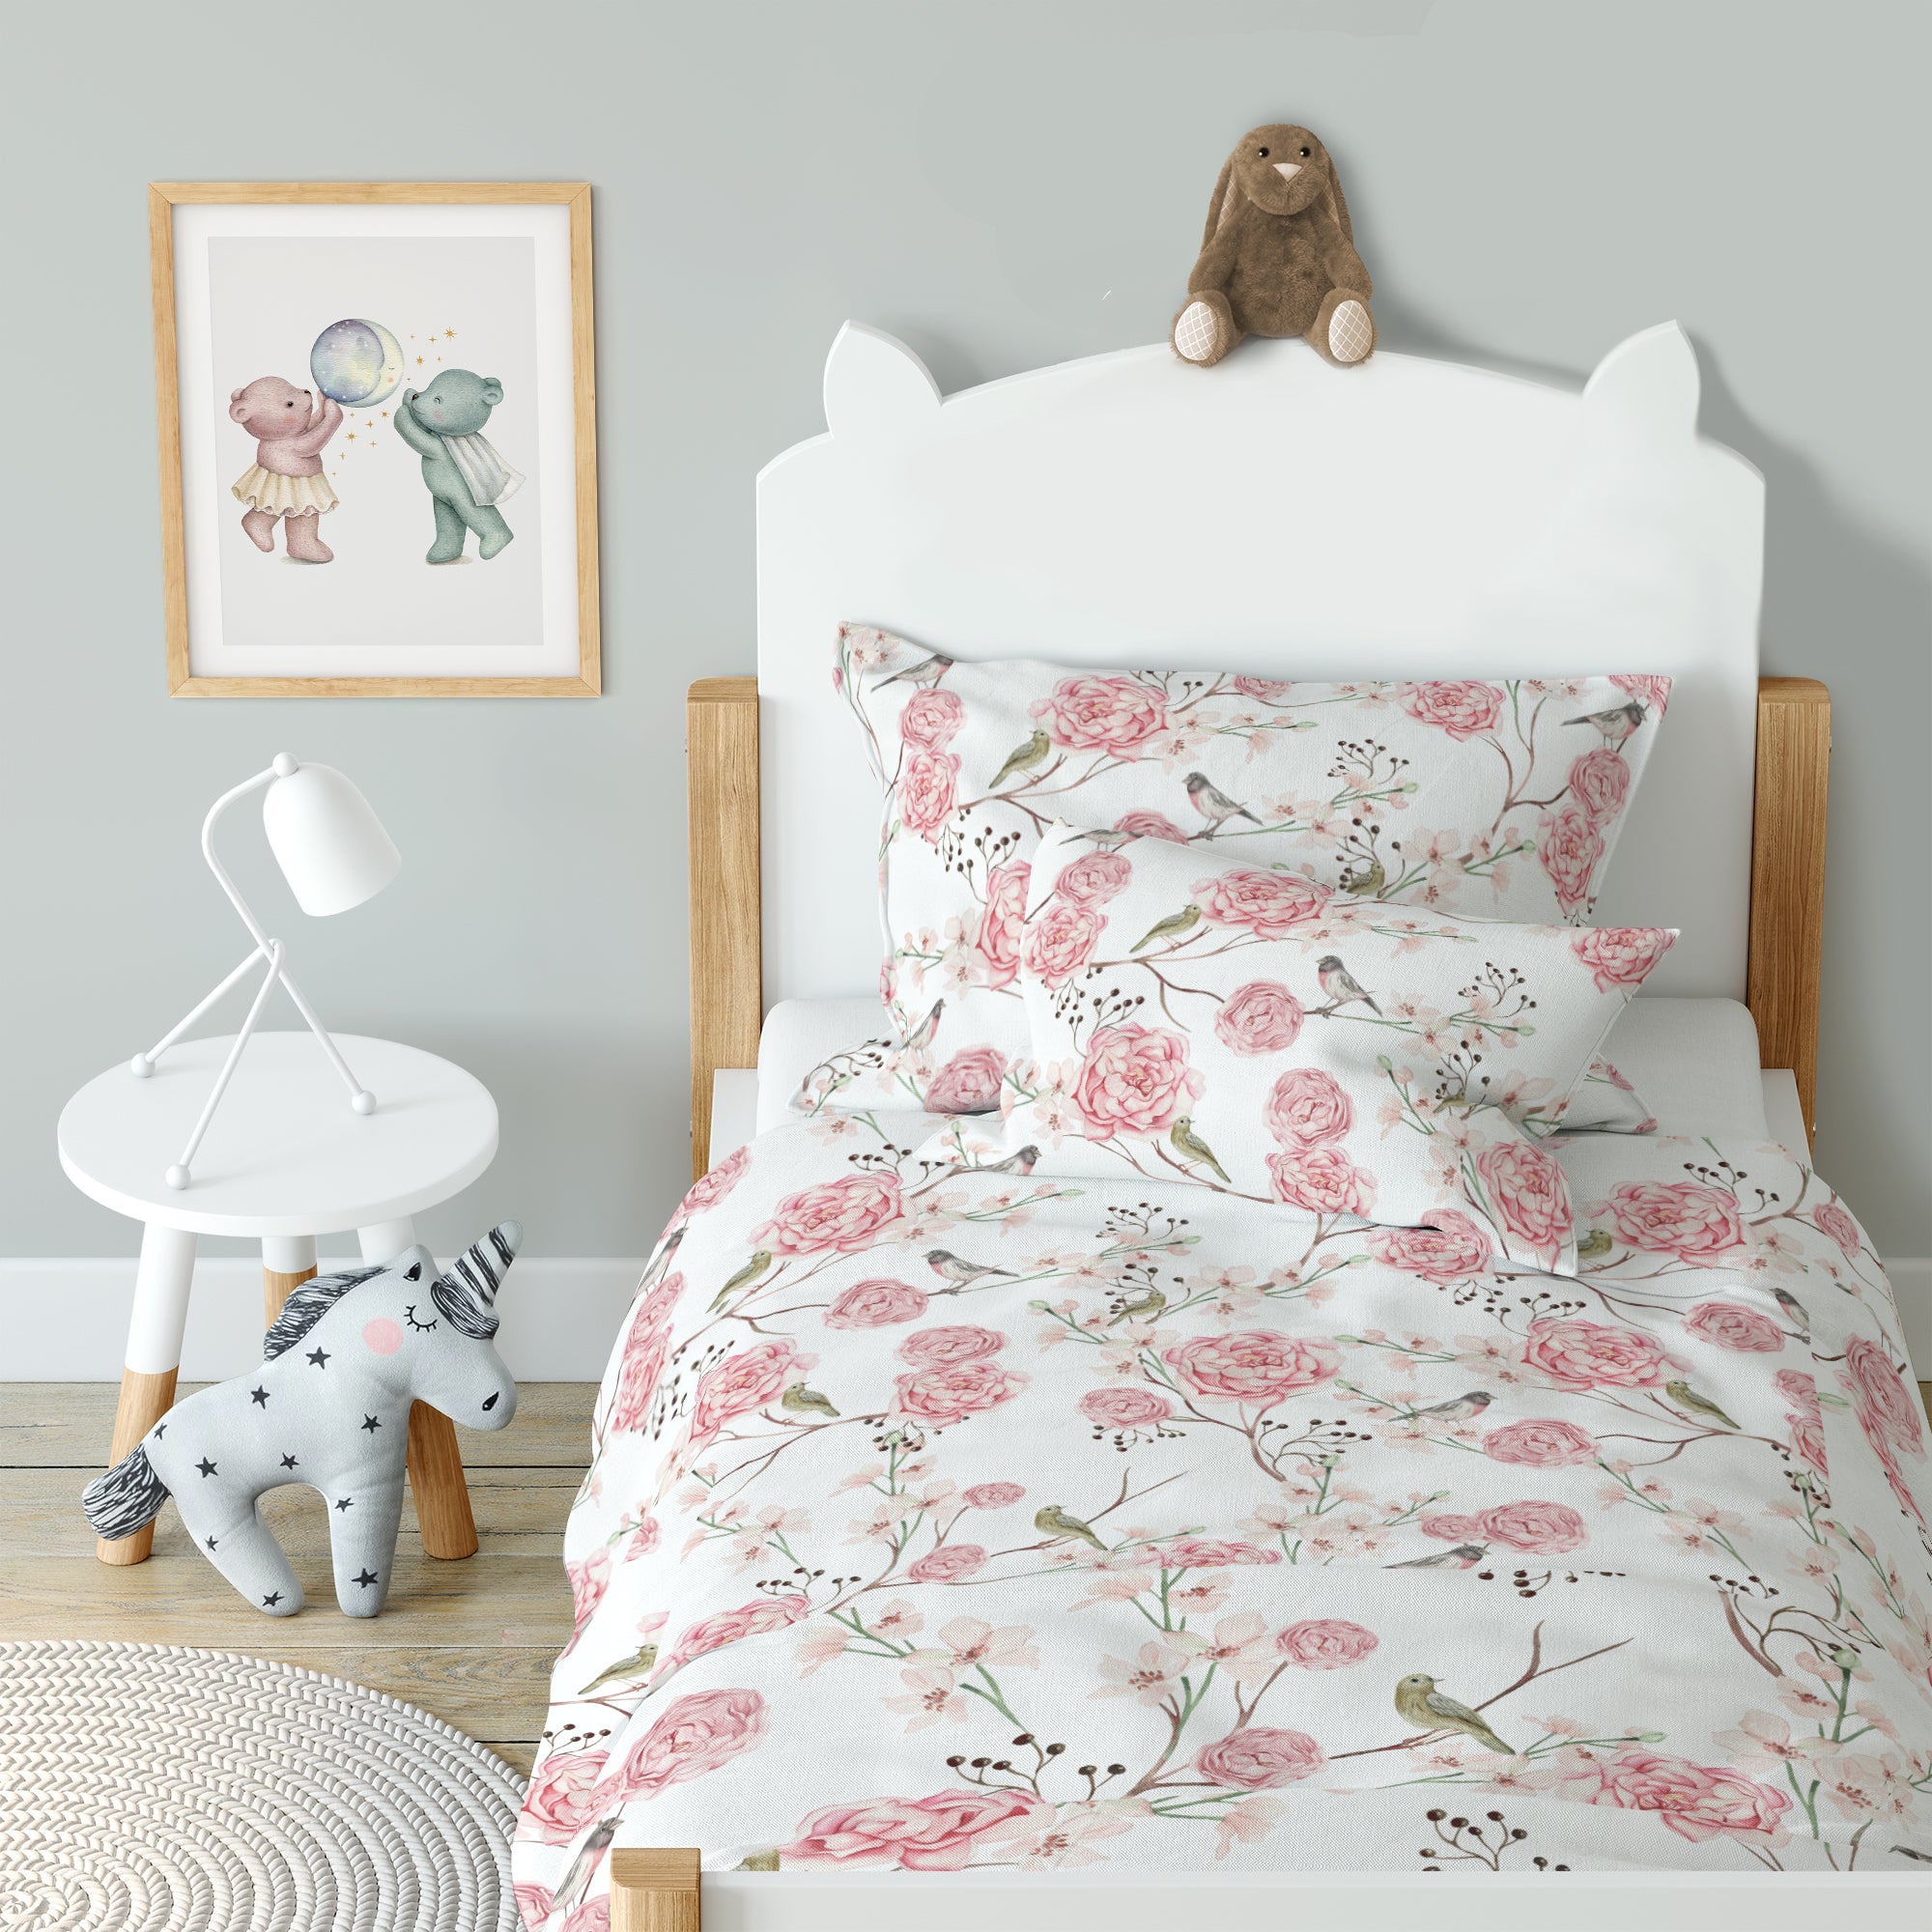 "Vögel und Blumen" Premium Kinderbettwäsche